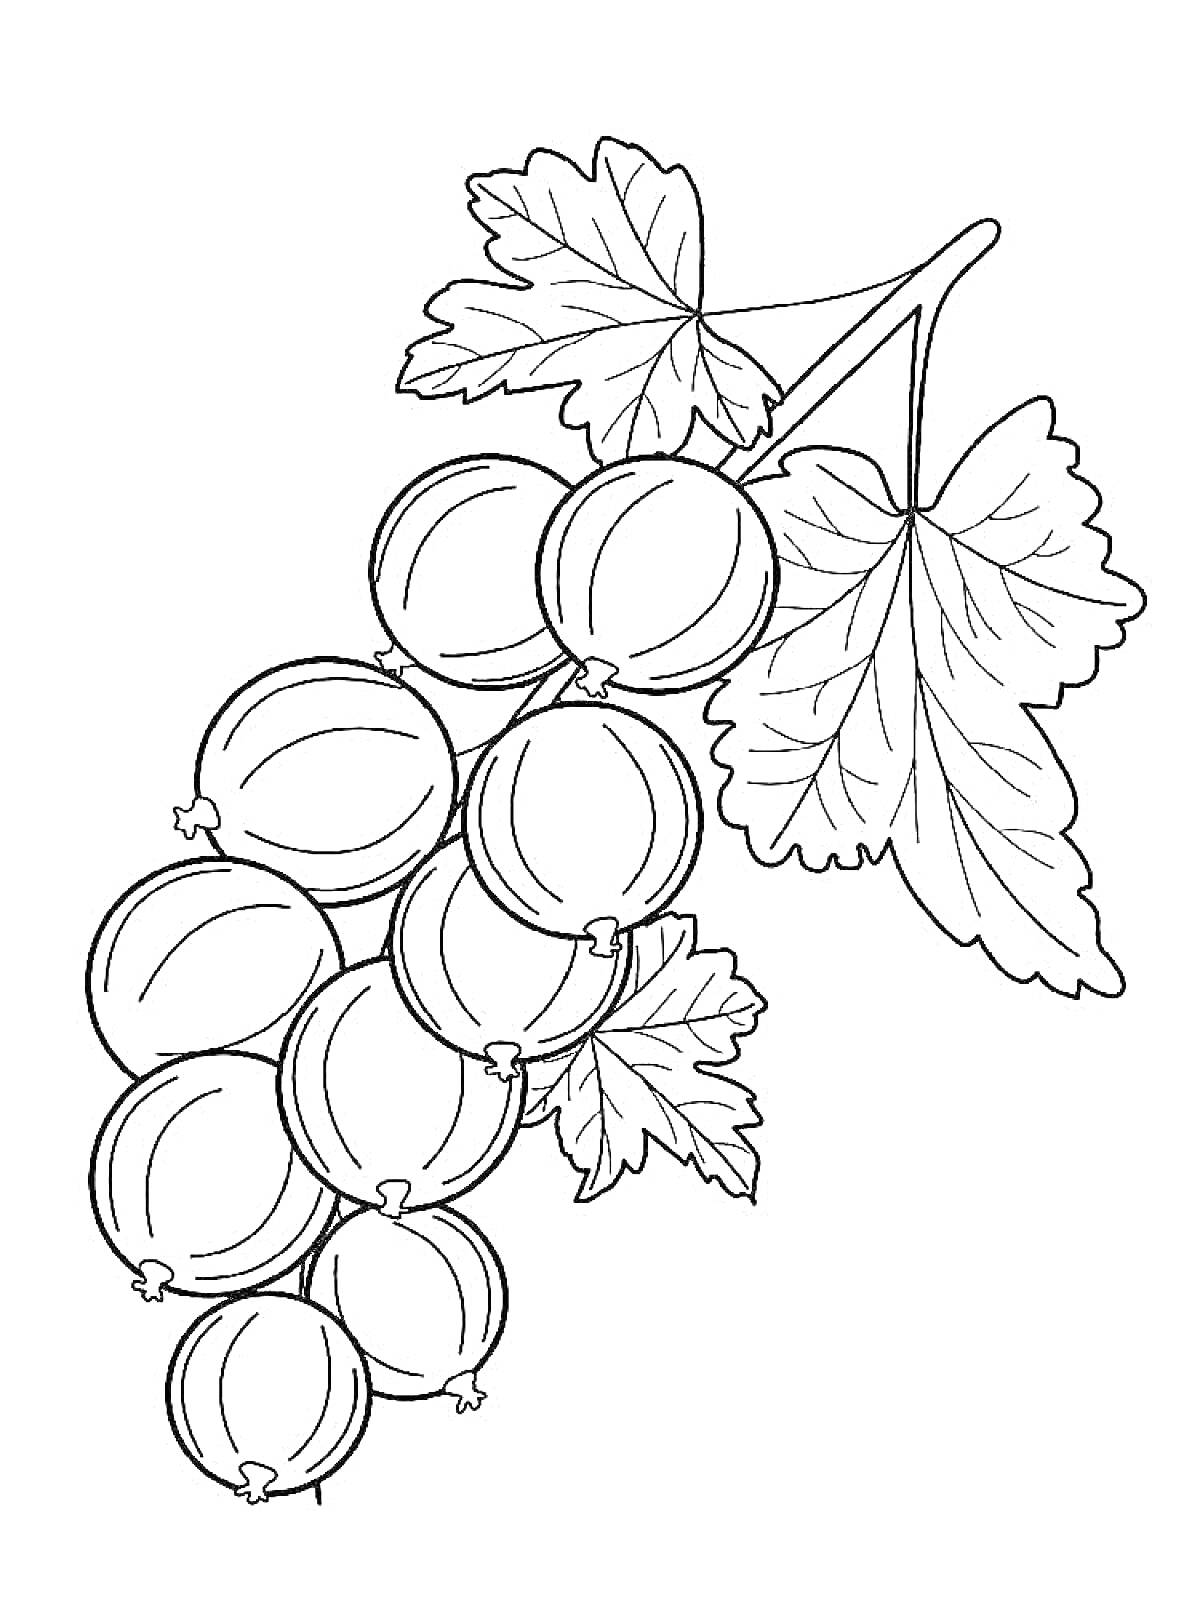 Раскраска Ветка с плодами крыжовника и листьями